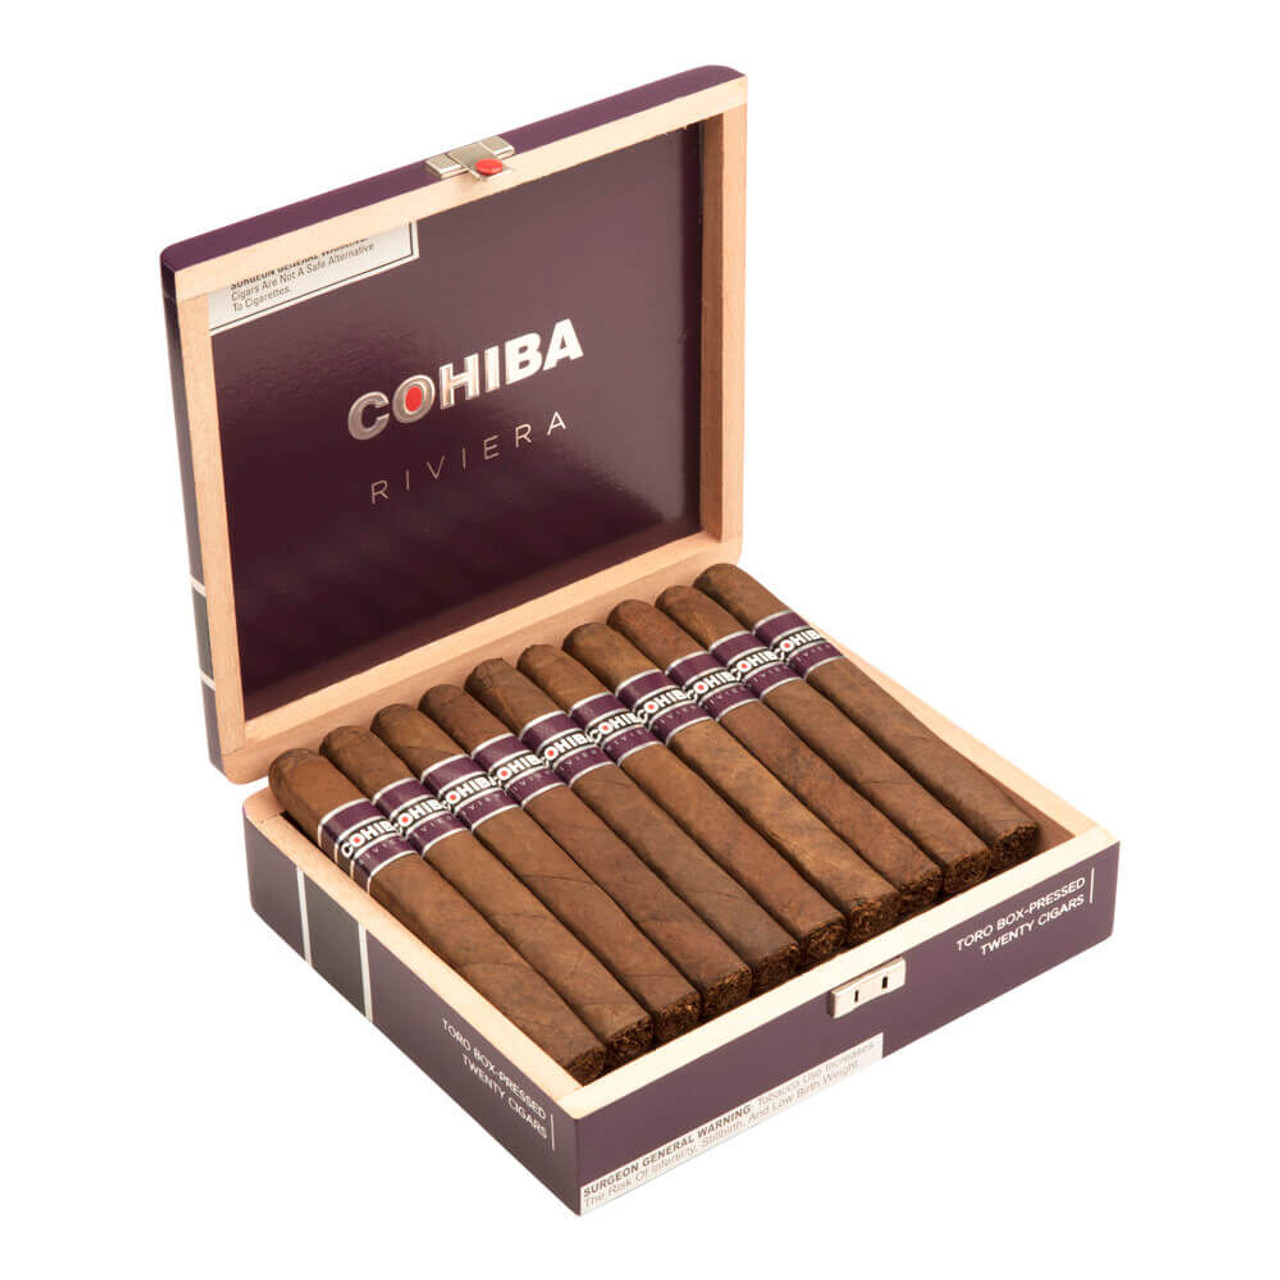 Cohiba Riviera Box-Pressed Toro Cigars - 6.5 x 52 (Box of 20) Open